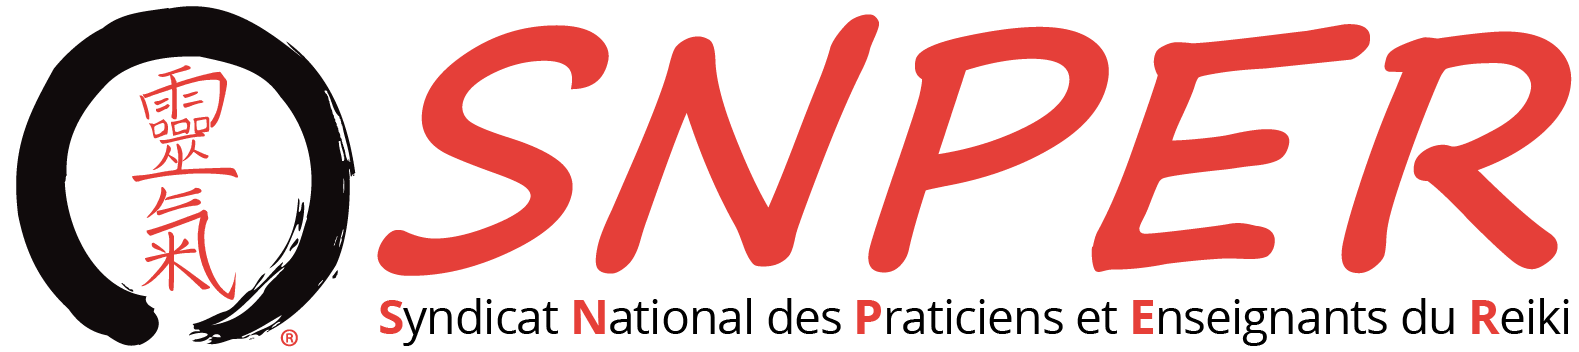 SNPER - Syndicat National des Praticiens et Enseignants du Reiki